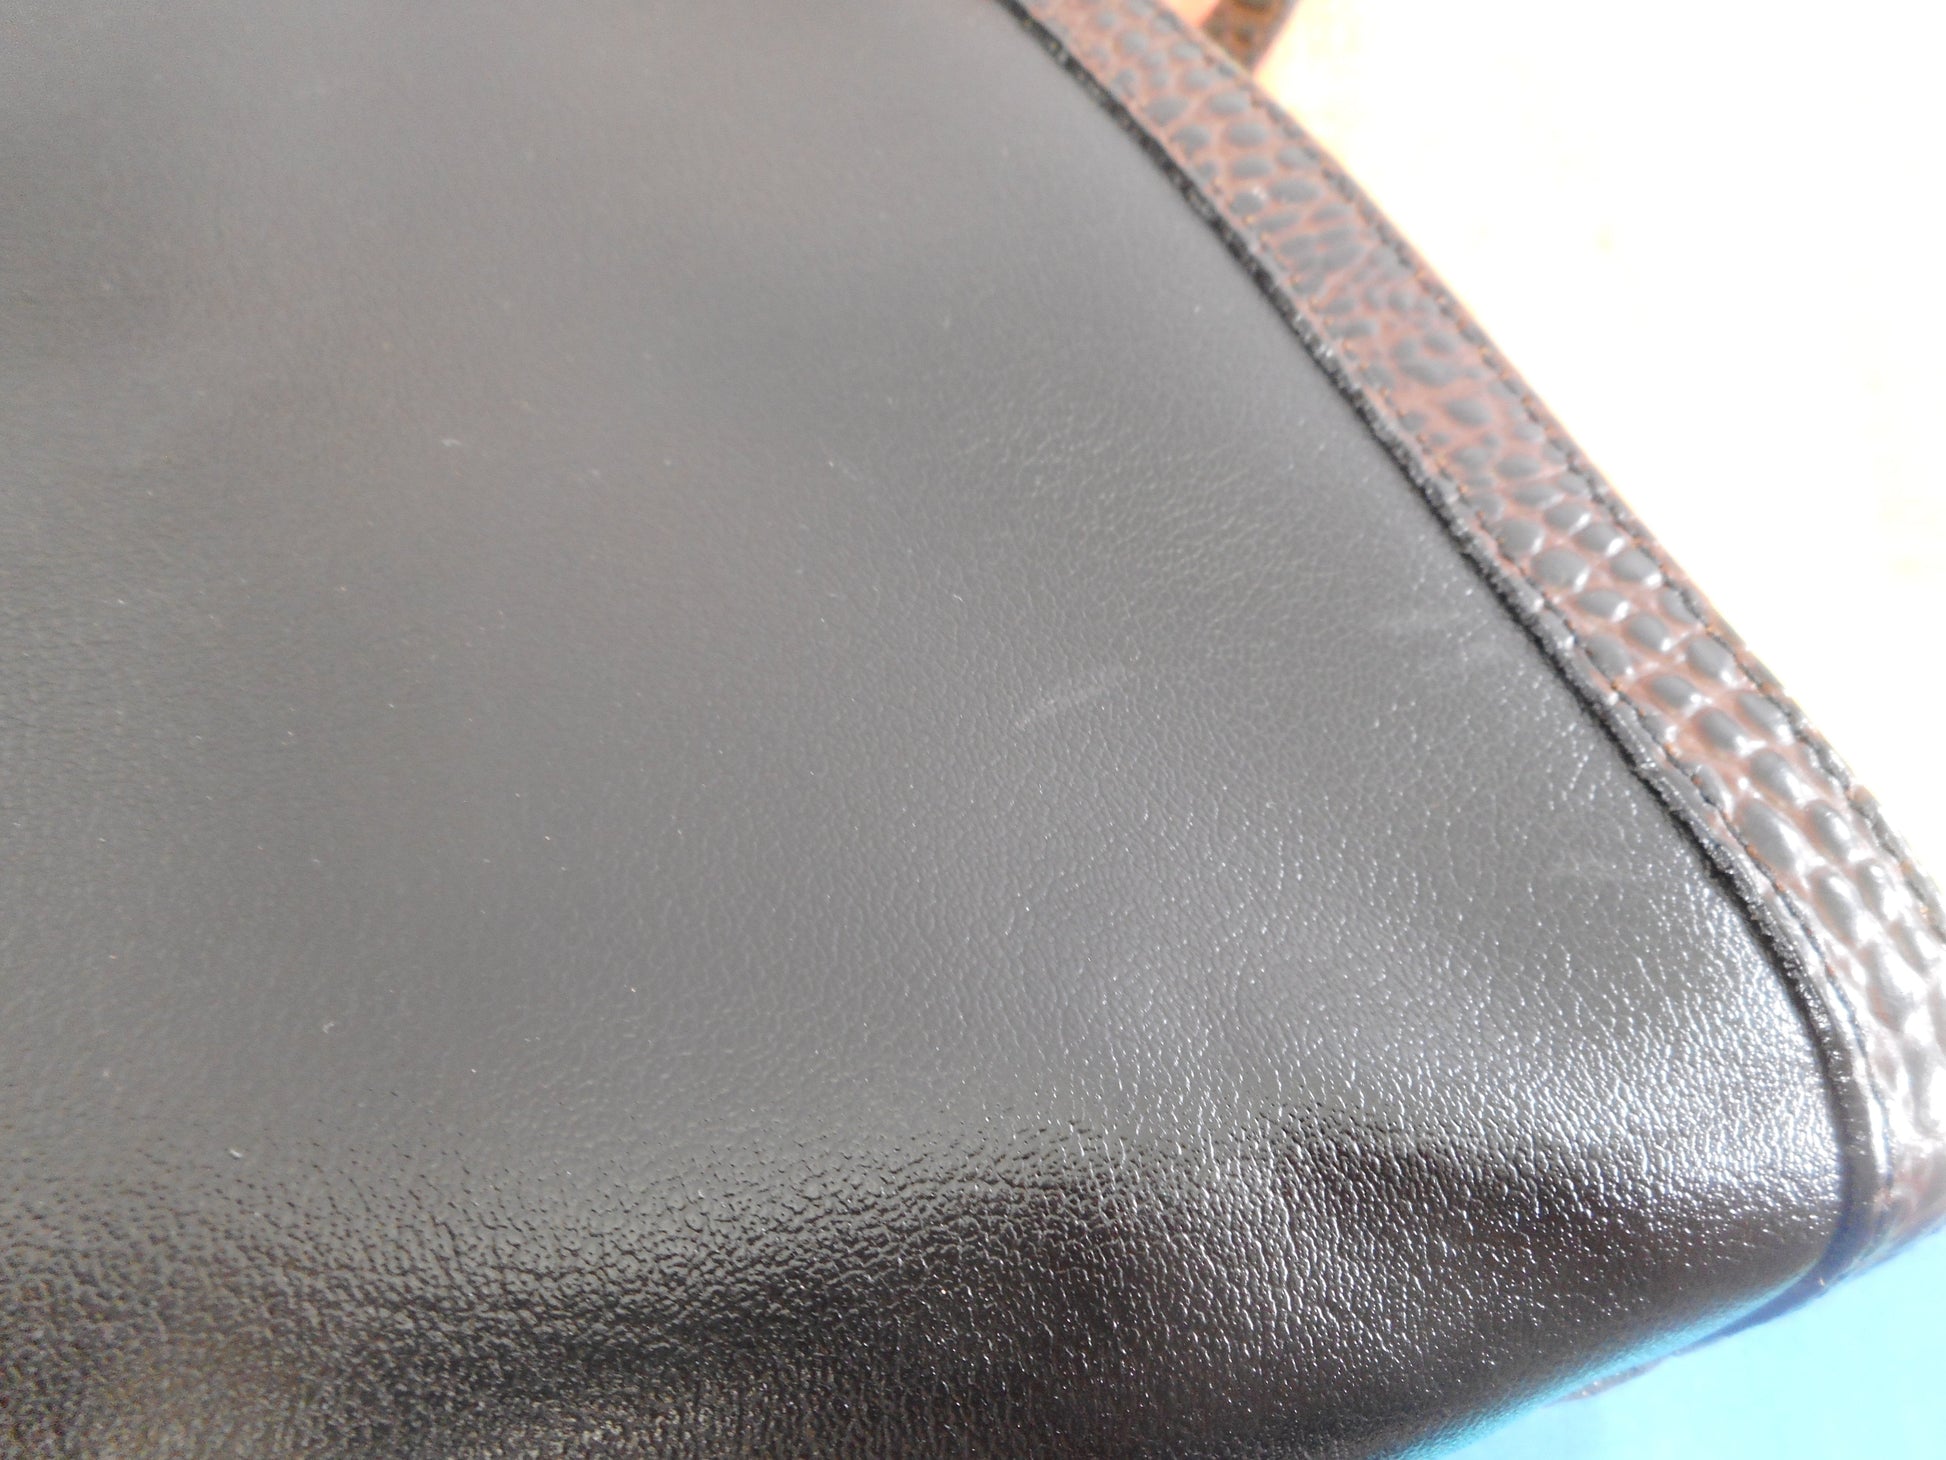 Brahmin Alligator Black Leather Satchel Handbag Shoulder Bag - Used Once EUC mild mark